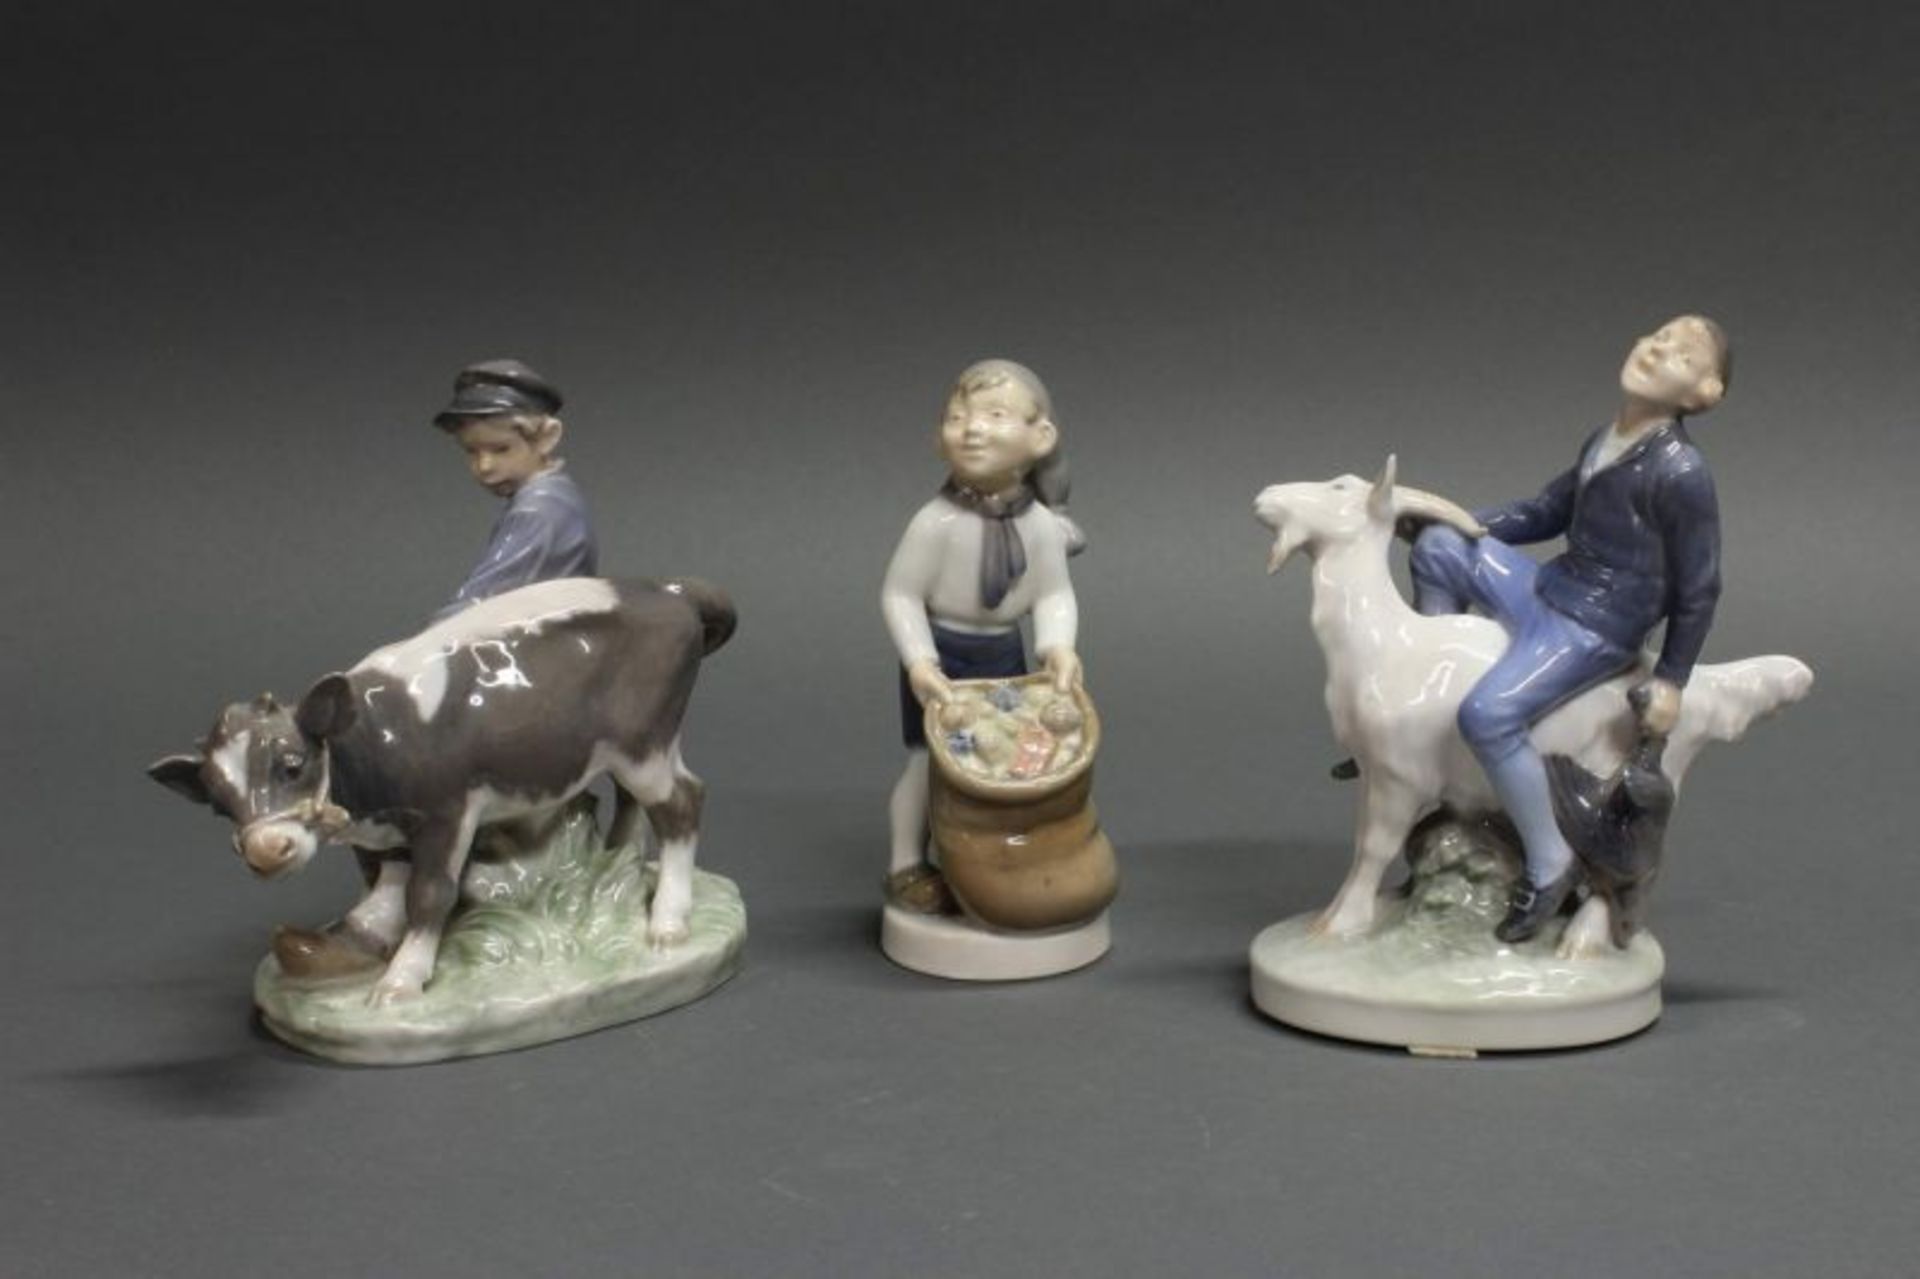 3 Porzellanfiguren, "Hirtenjunge mit Kälbchen", "Hans im Glück", "Dezember-Junge mit